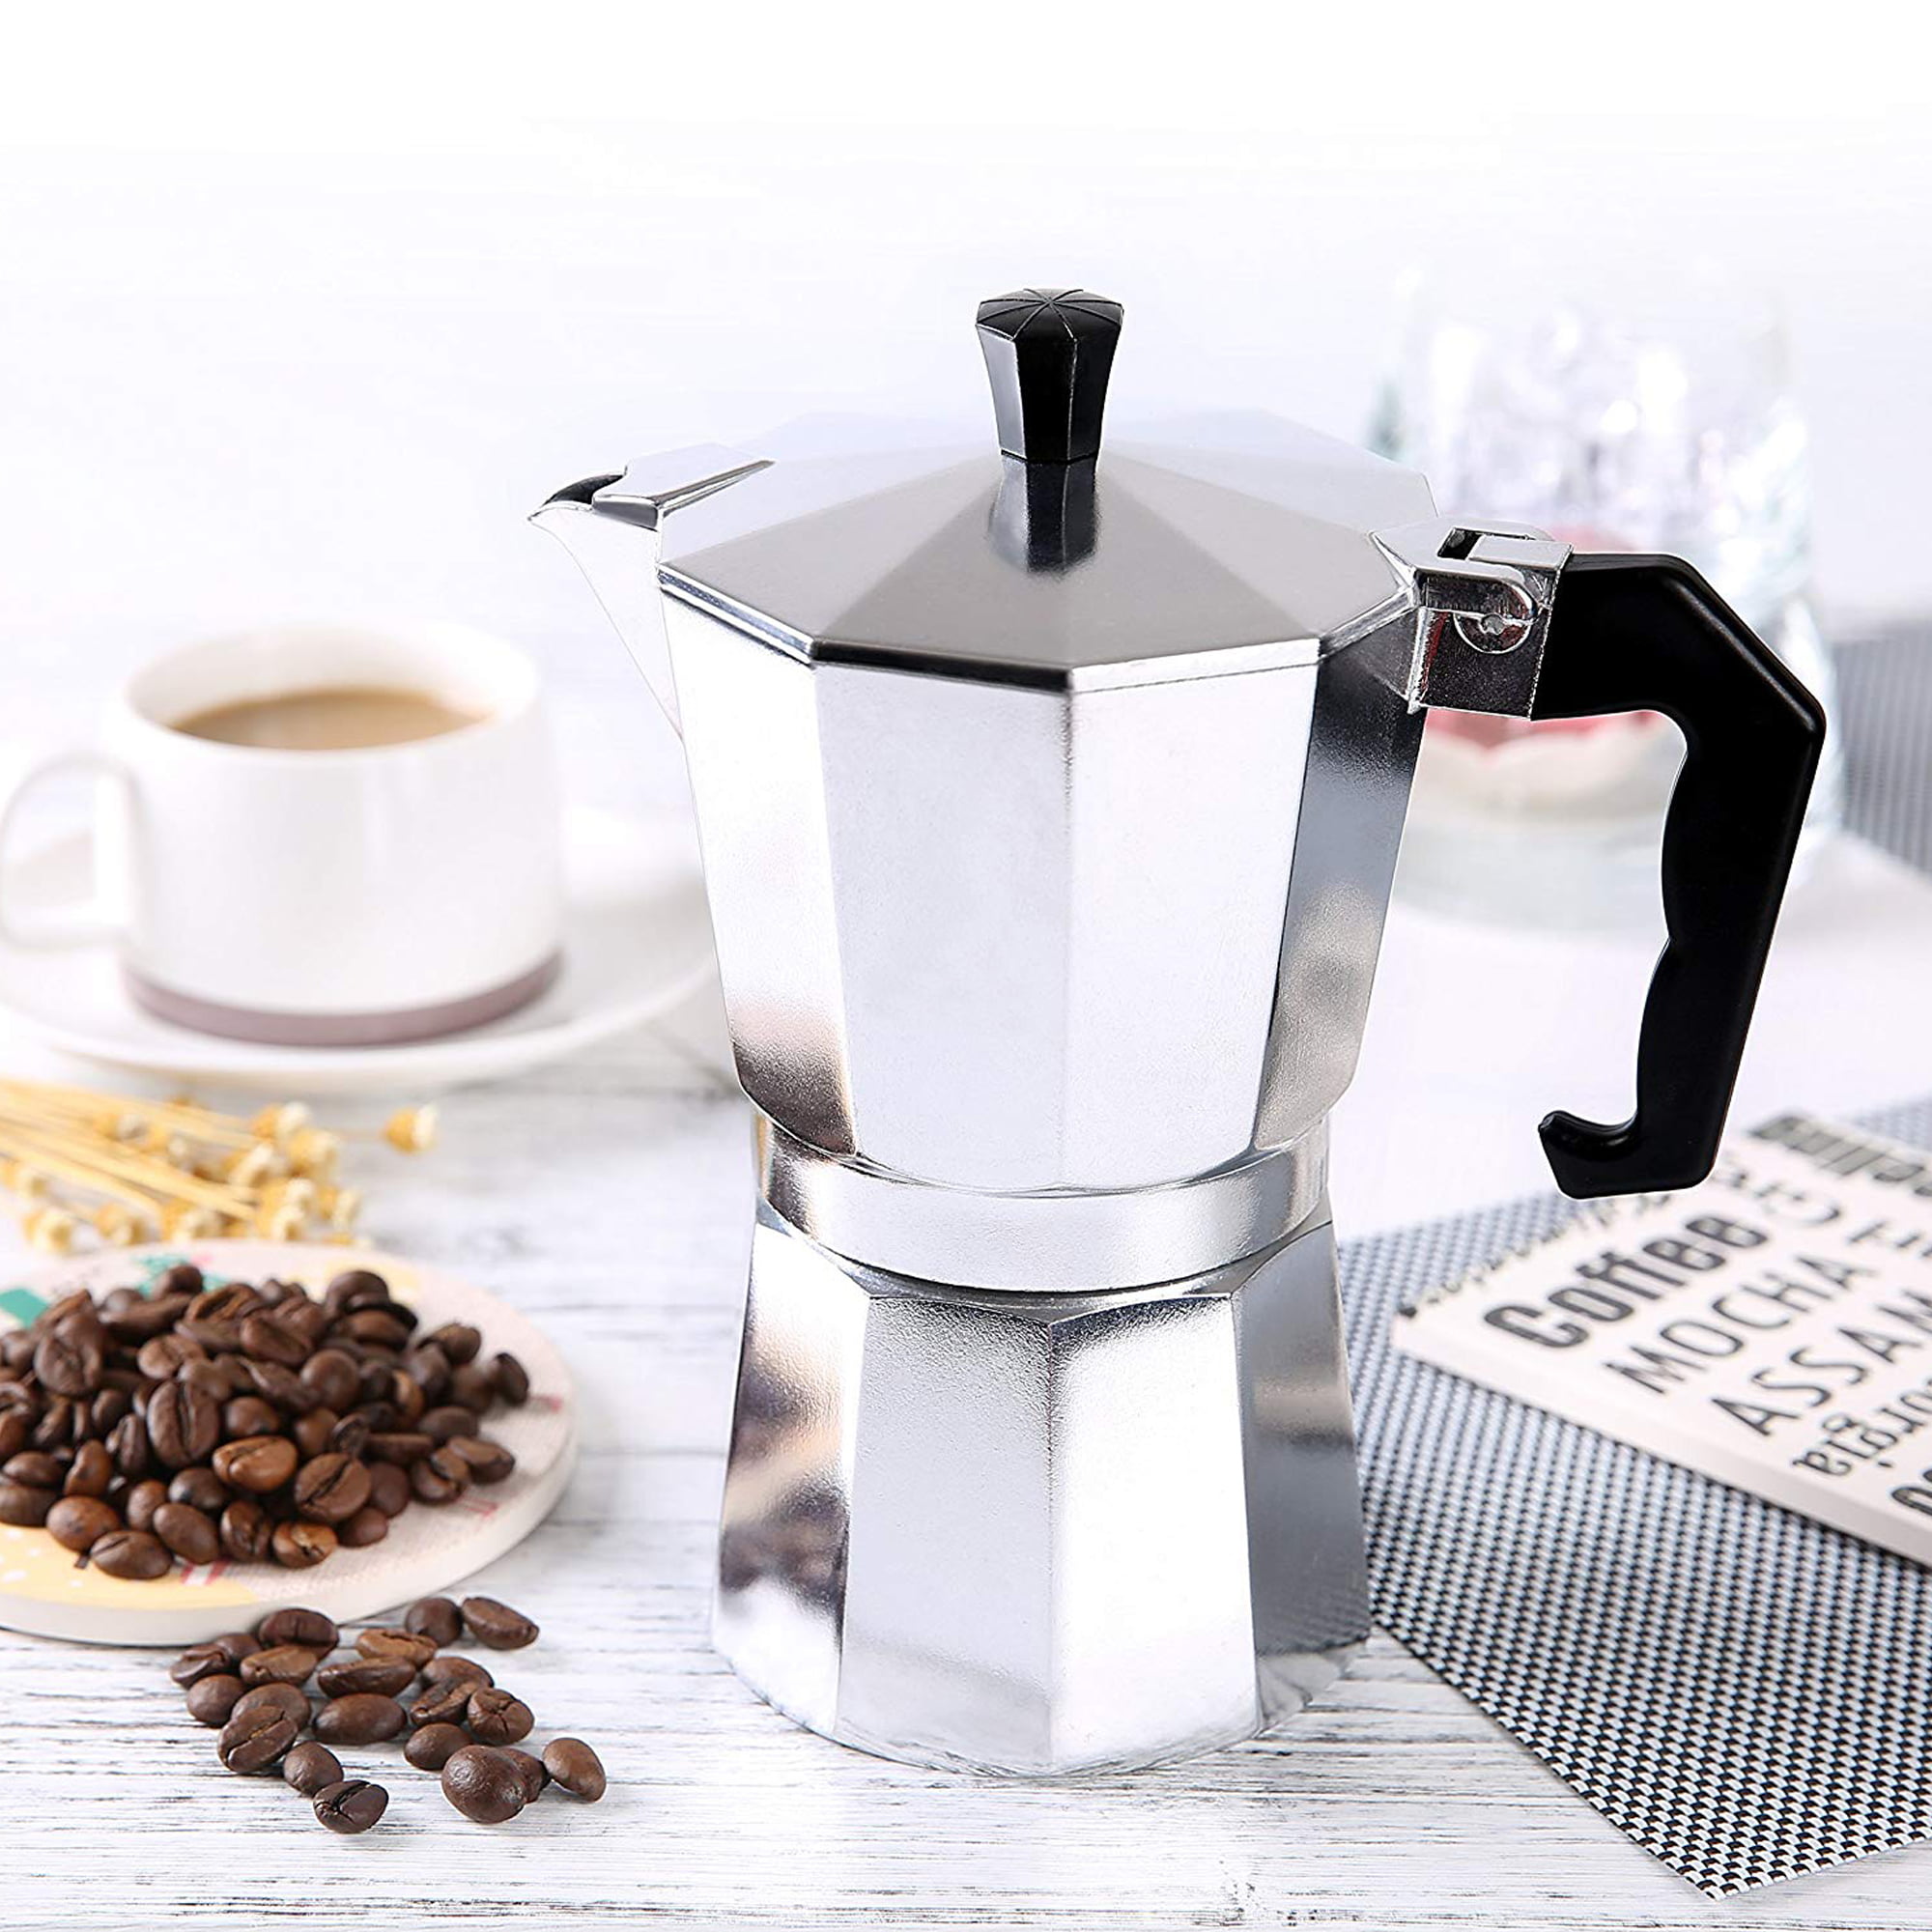 Bene Casa BC-99189 Espresso Maker 4-Cup